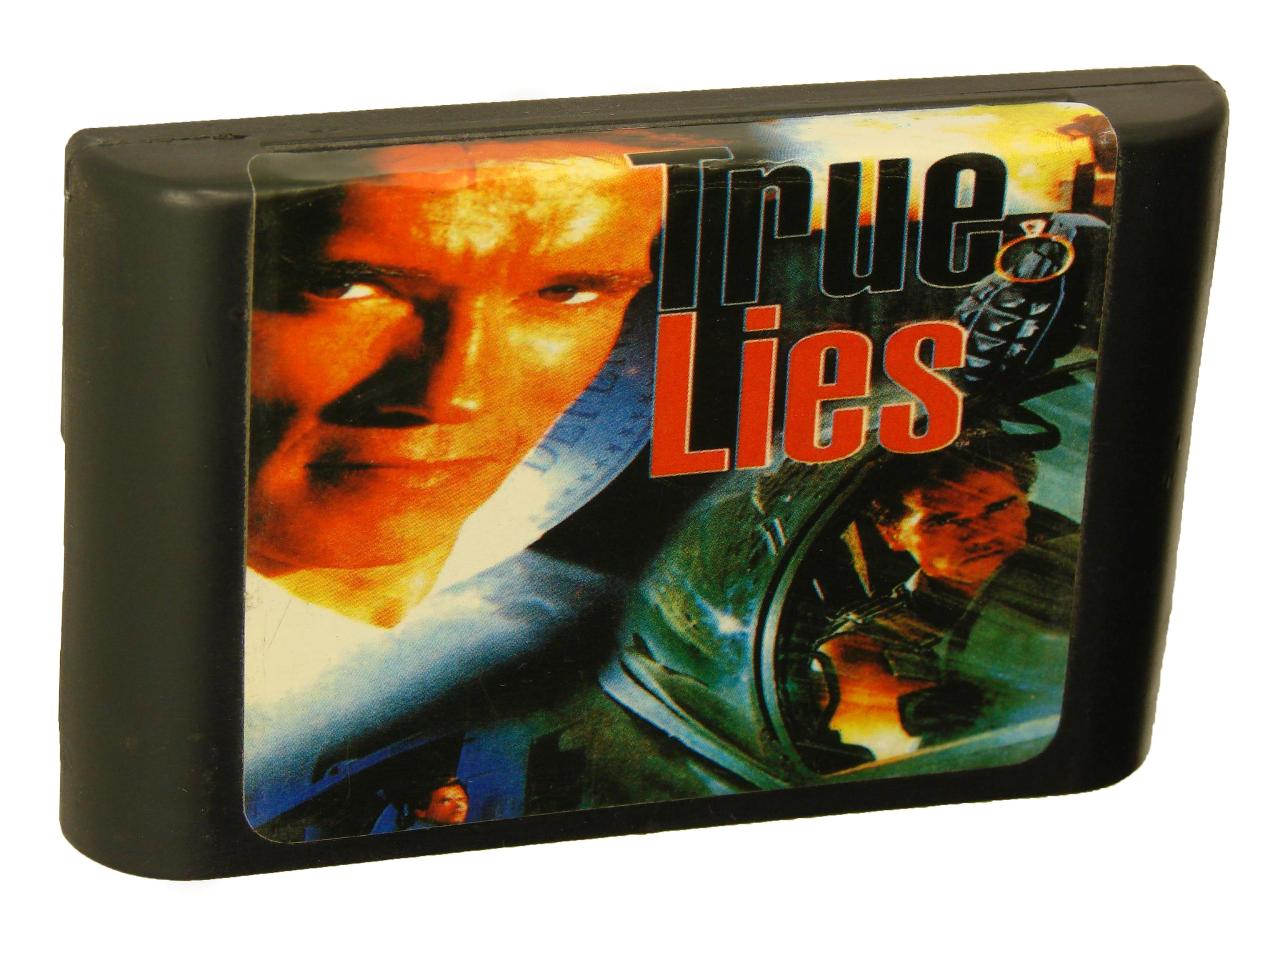 Картридж для Sega True Lies (Sega)